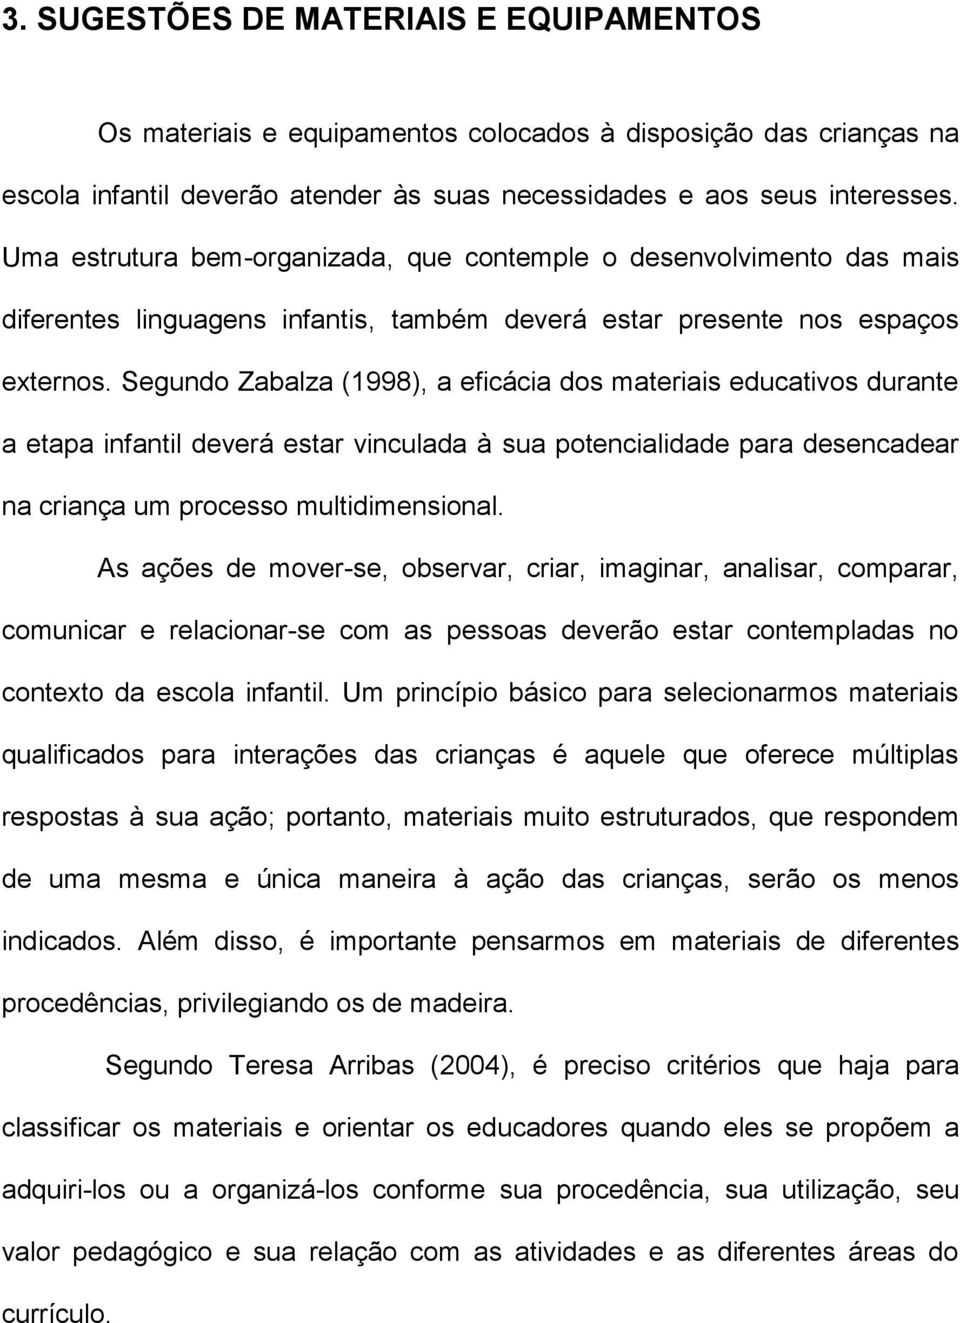 Segundo Zabalza (1998), a eficácia dos materiais educativos durante a etapa infantil deverá estar vinculada à sua potencialidade para desencadear na criança um processo multidimensional.